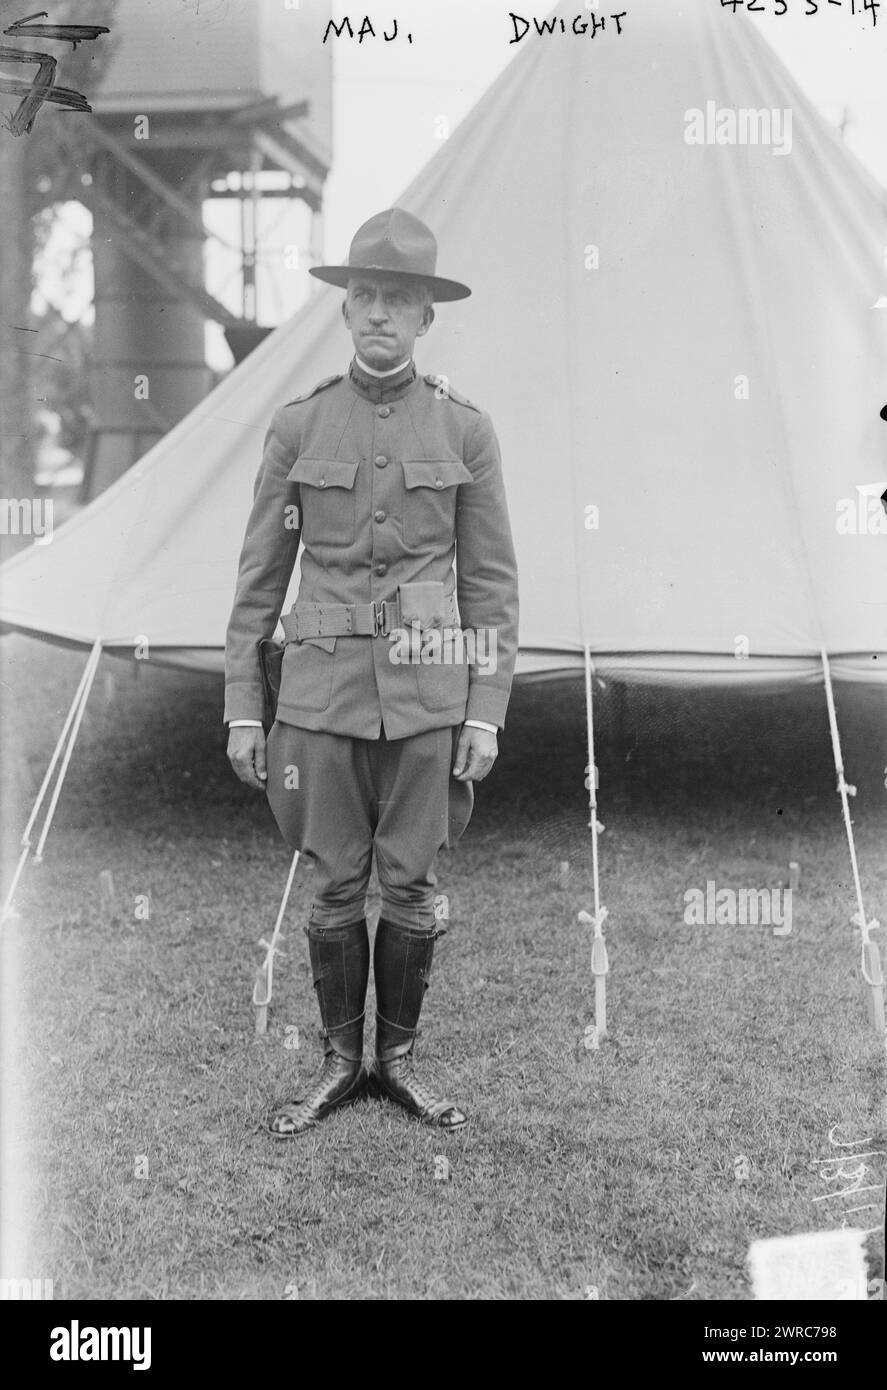 Major Dwight, photographie montrant Major Arthur S. Dwight (1864-1946) du First Reserve Engineer Regiment., 1917 juillet 3, Guerre mondiale, 1914-1918, négatifs en verre, 1 négatif : verre Banque D'Images